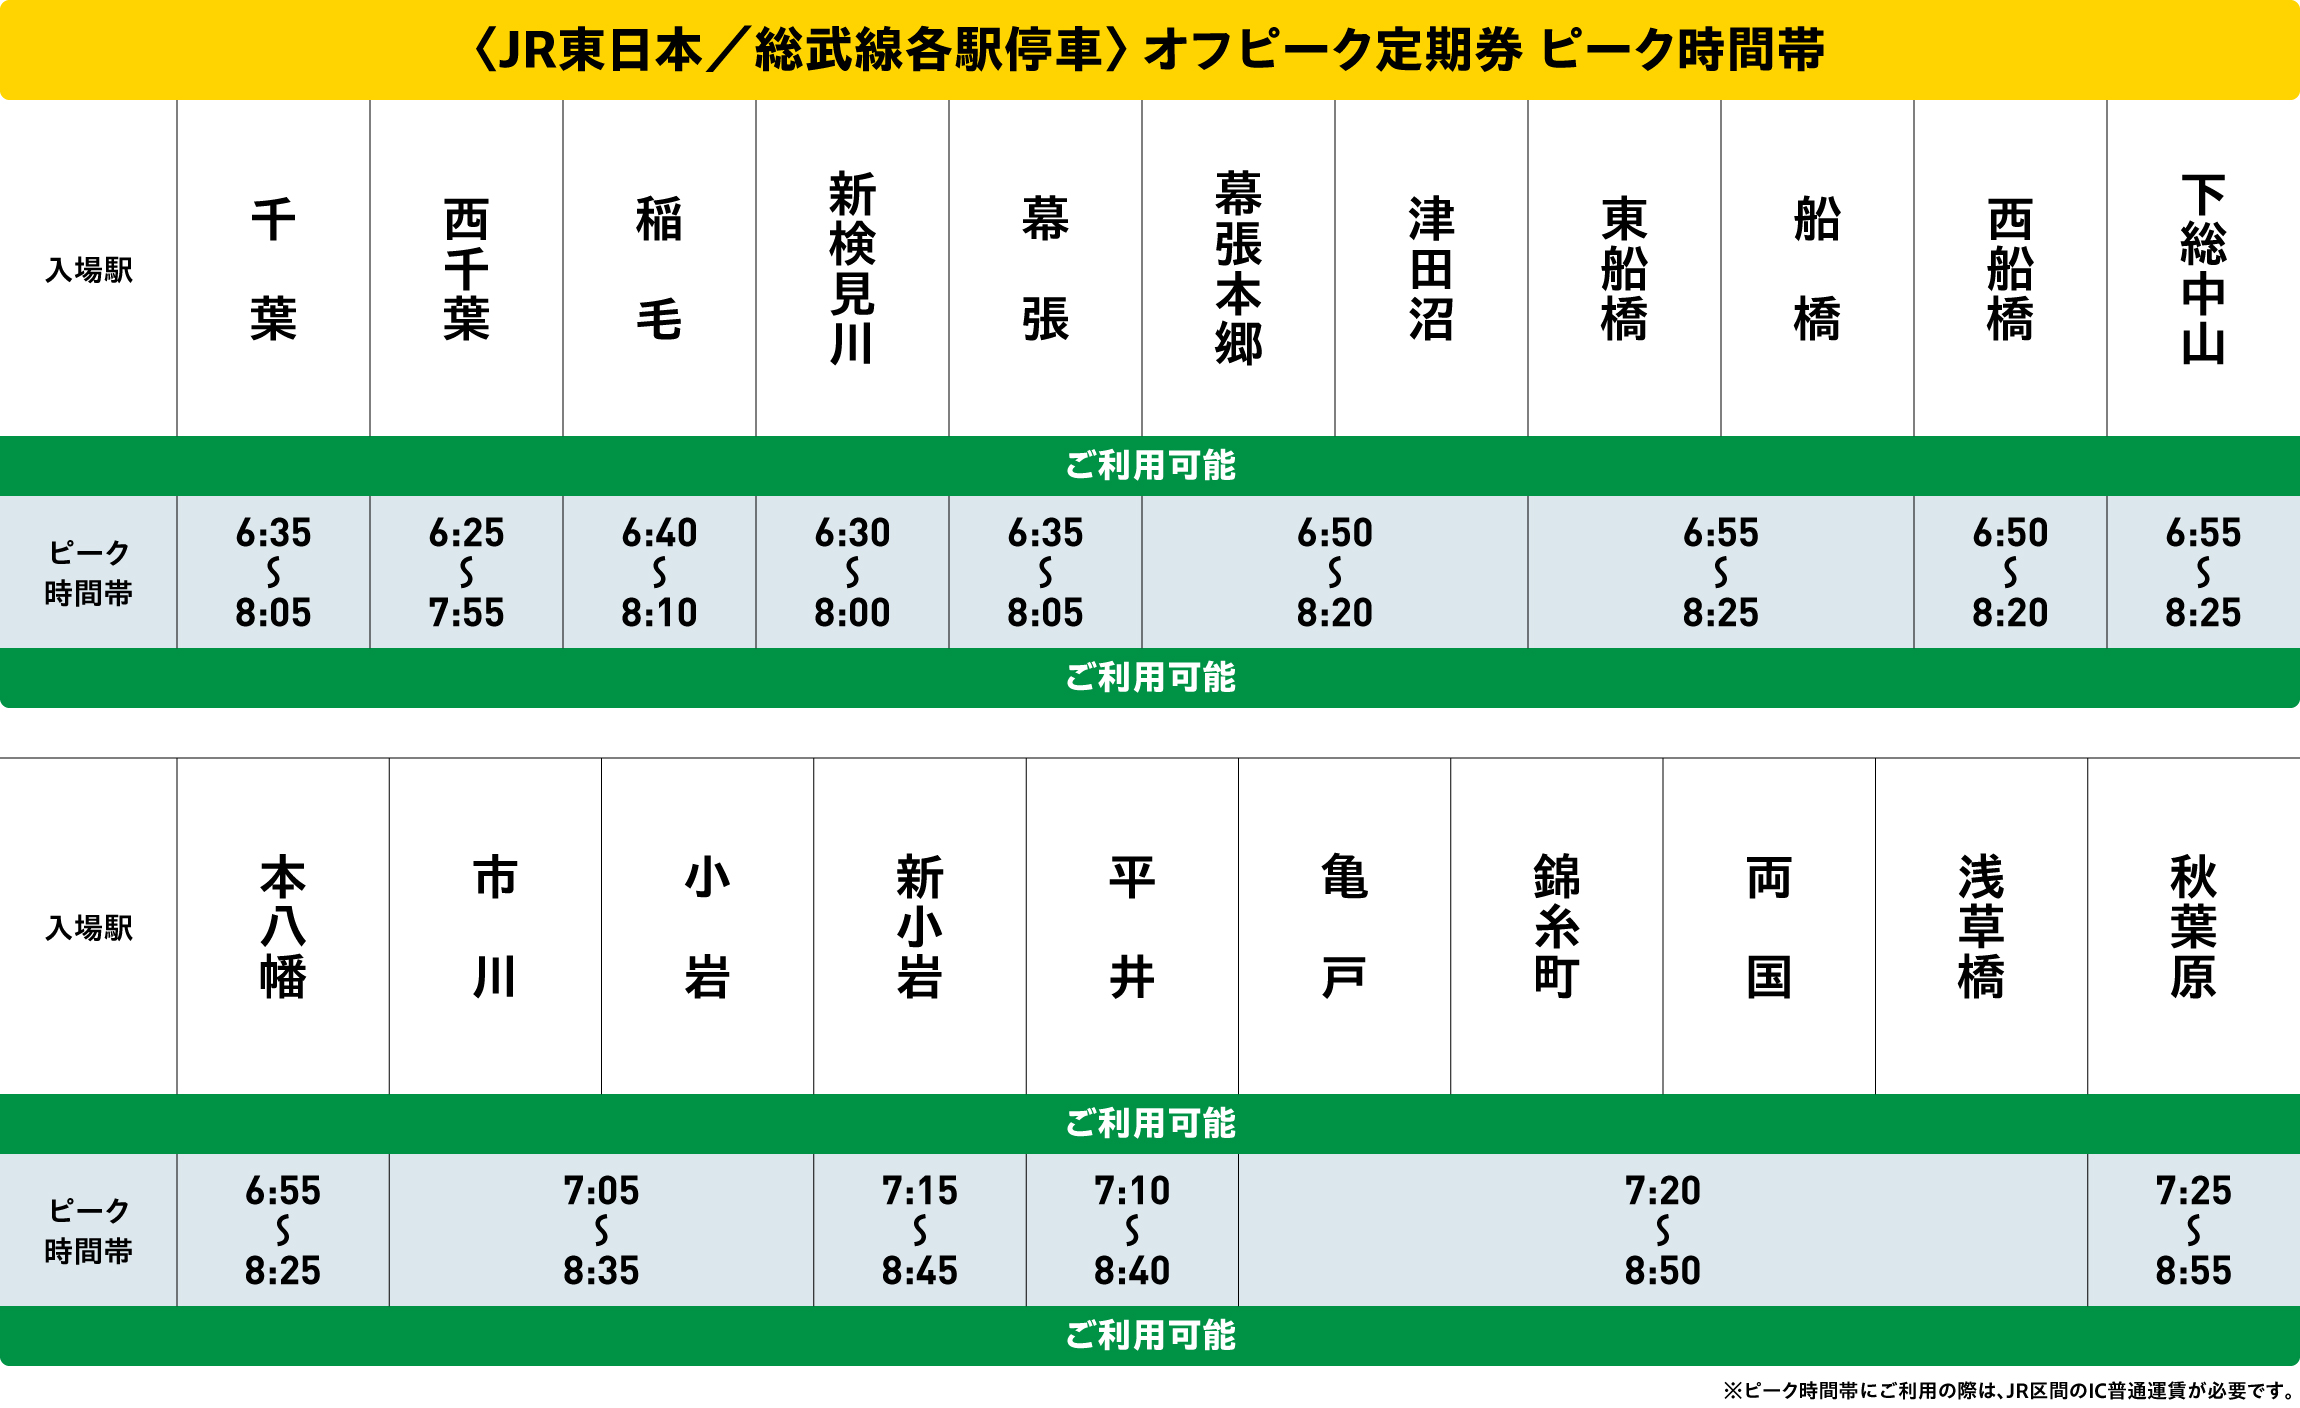 総武線各駅停車オフピークポイントサービス対象時間帯